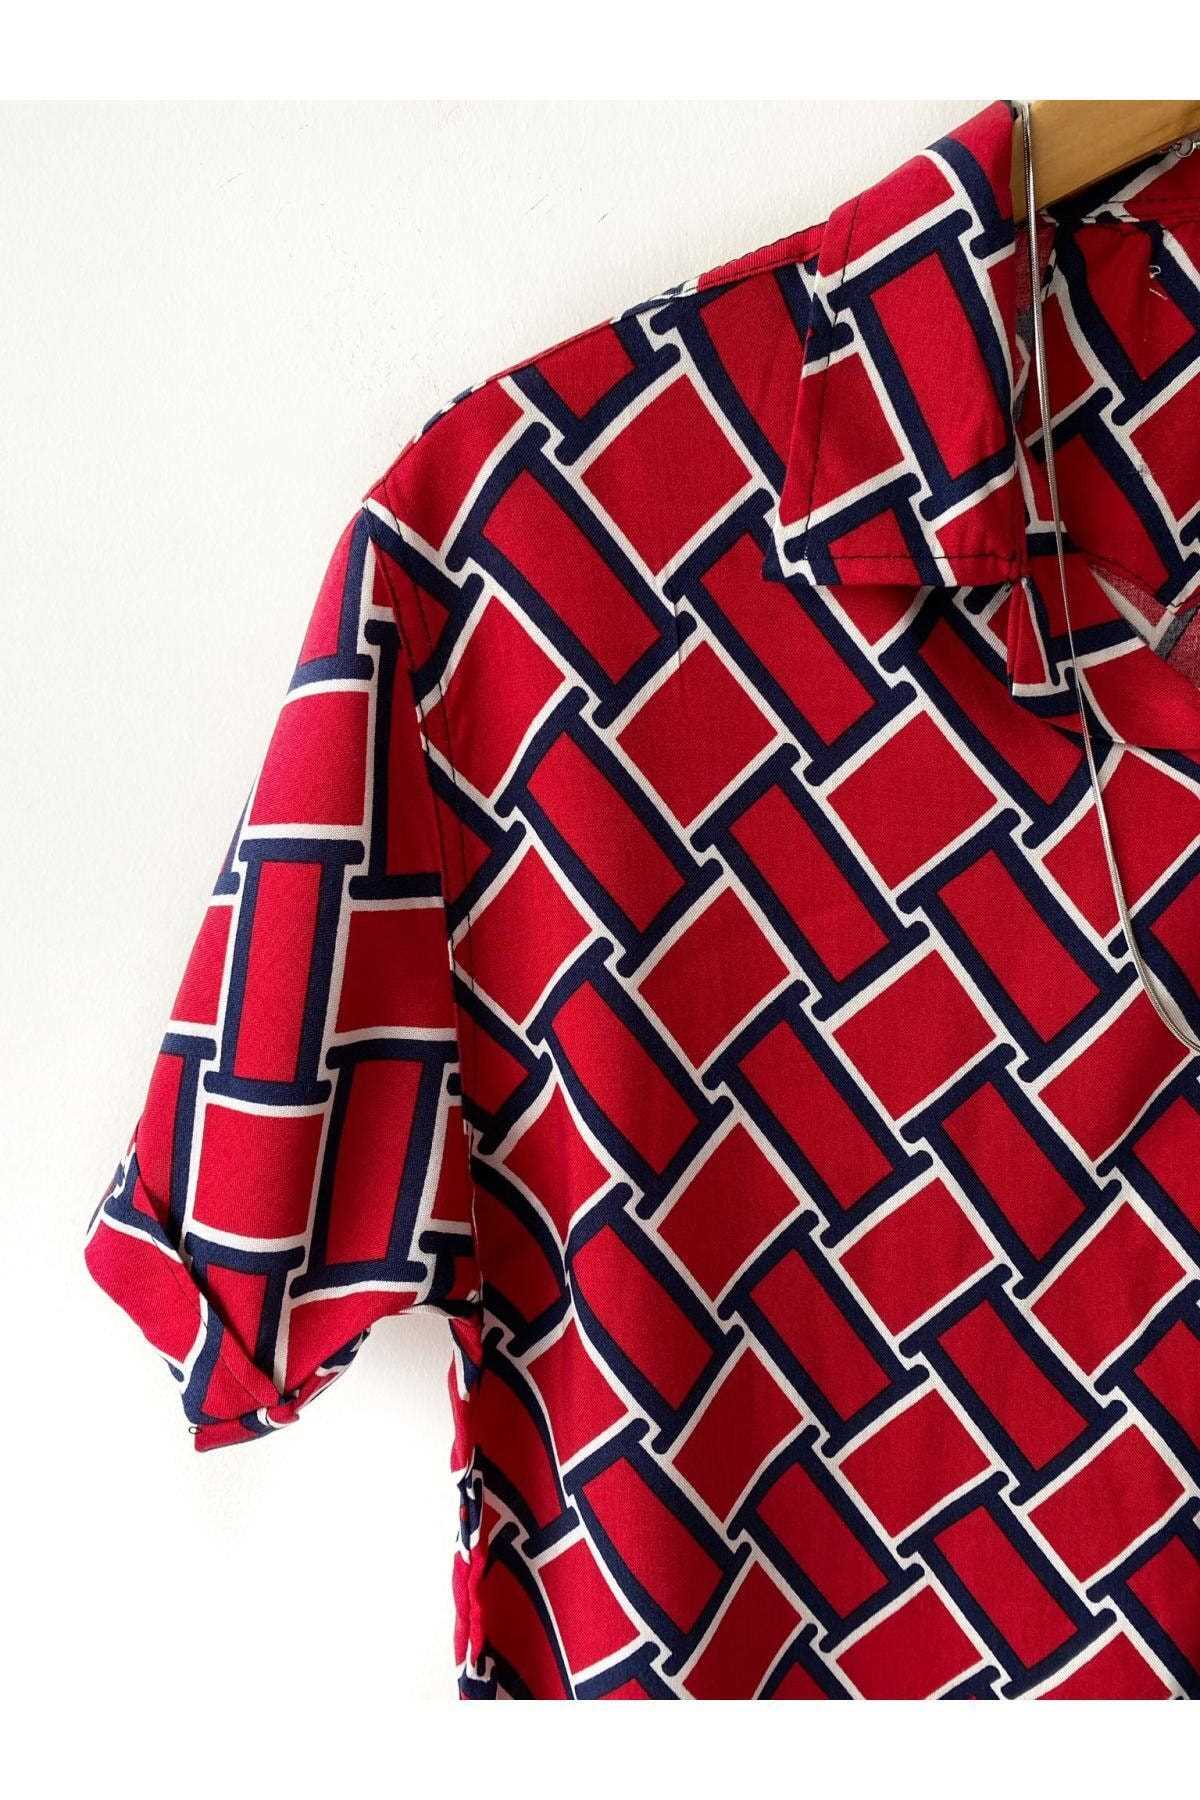 فروش پیراهن آستین کوتاه مردانه برند Hazhers رنگ قرمز ty123351151